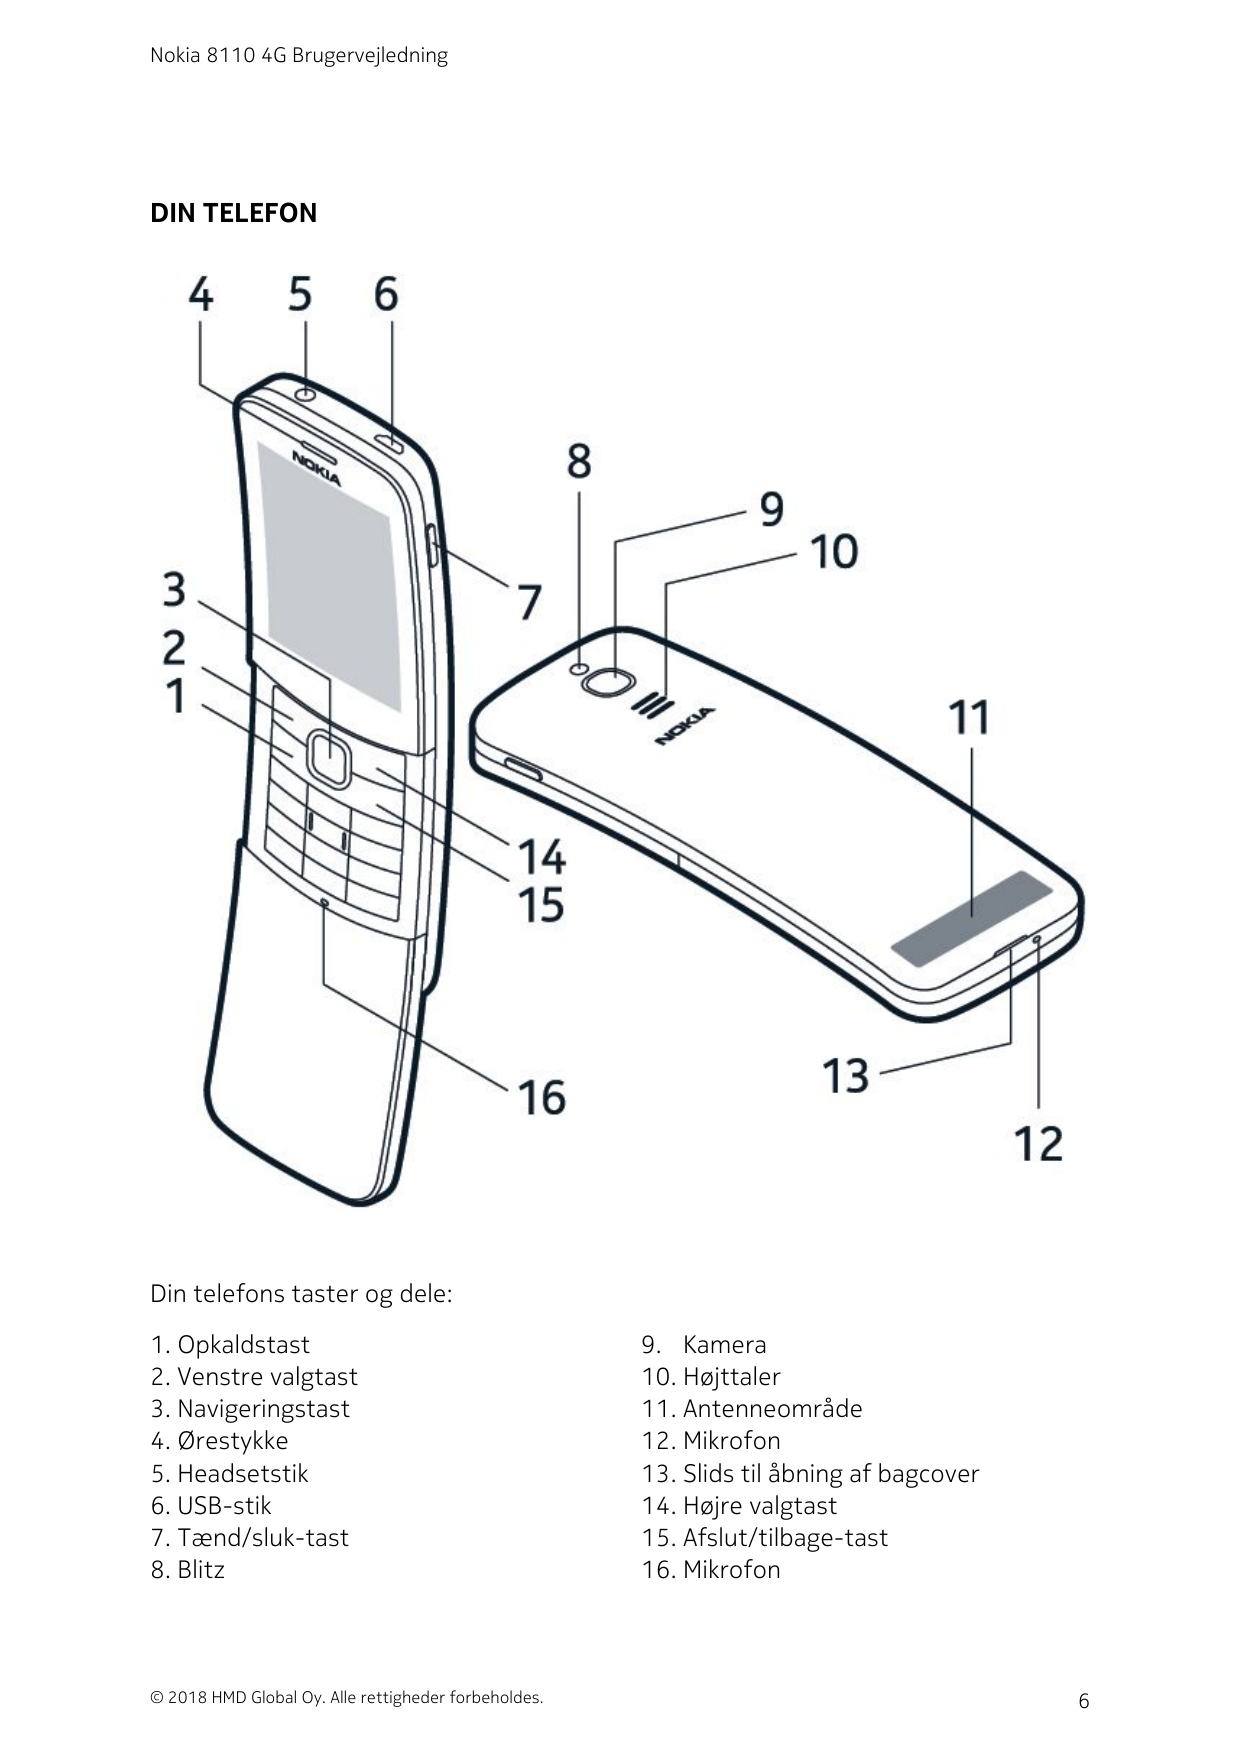 Nokia 8110 4G BrugervejledningDIN TELEFONDin telefons taster og dele:1. Opkaldstast2. Venstre valgtast3. Navigeringstast4. Ørest